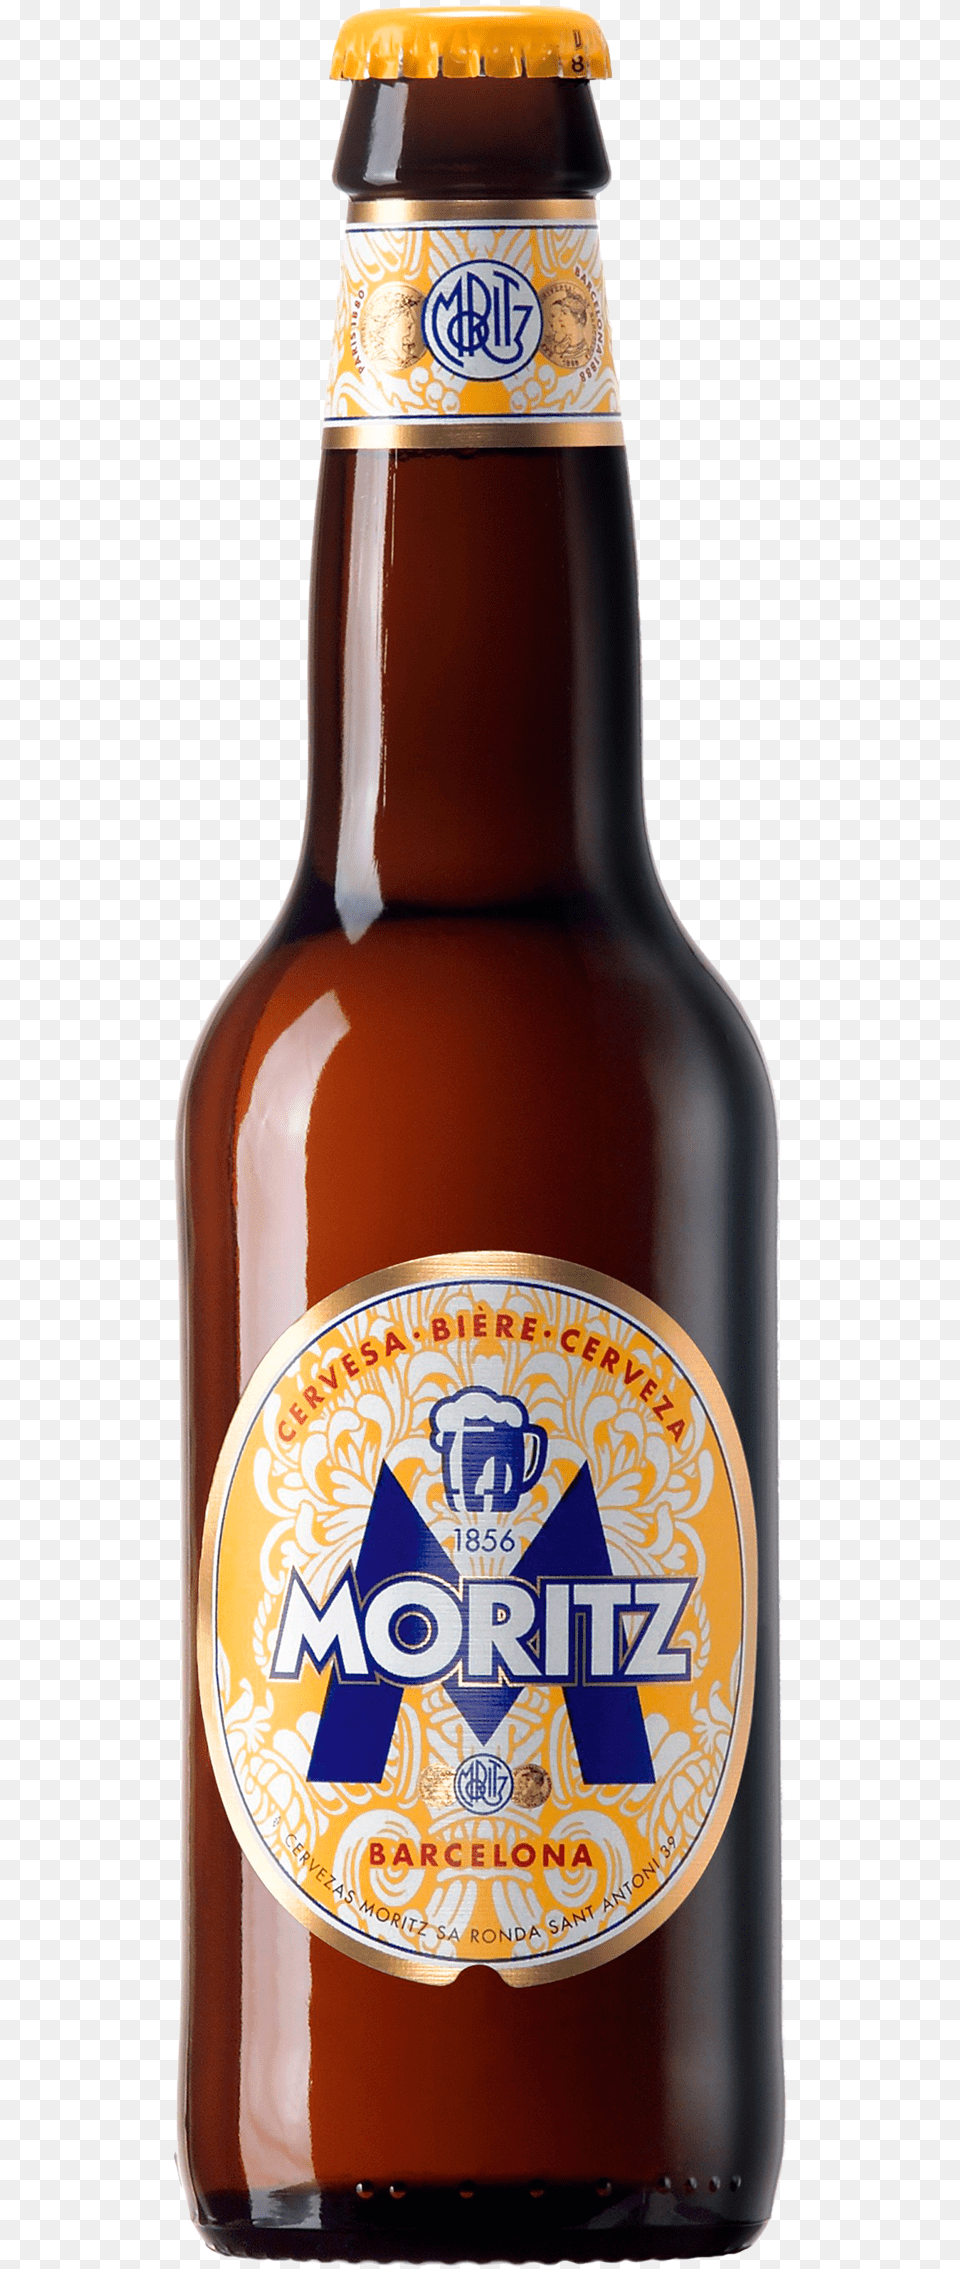 Moritz Beer, Alcohol, Beer Bottle, Beverage, Bottle Png Image